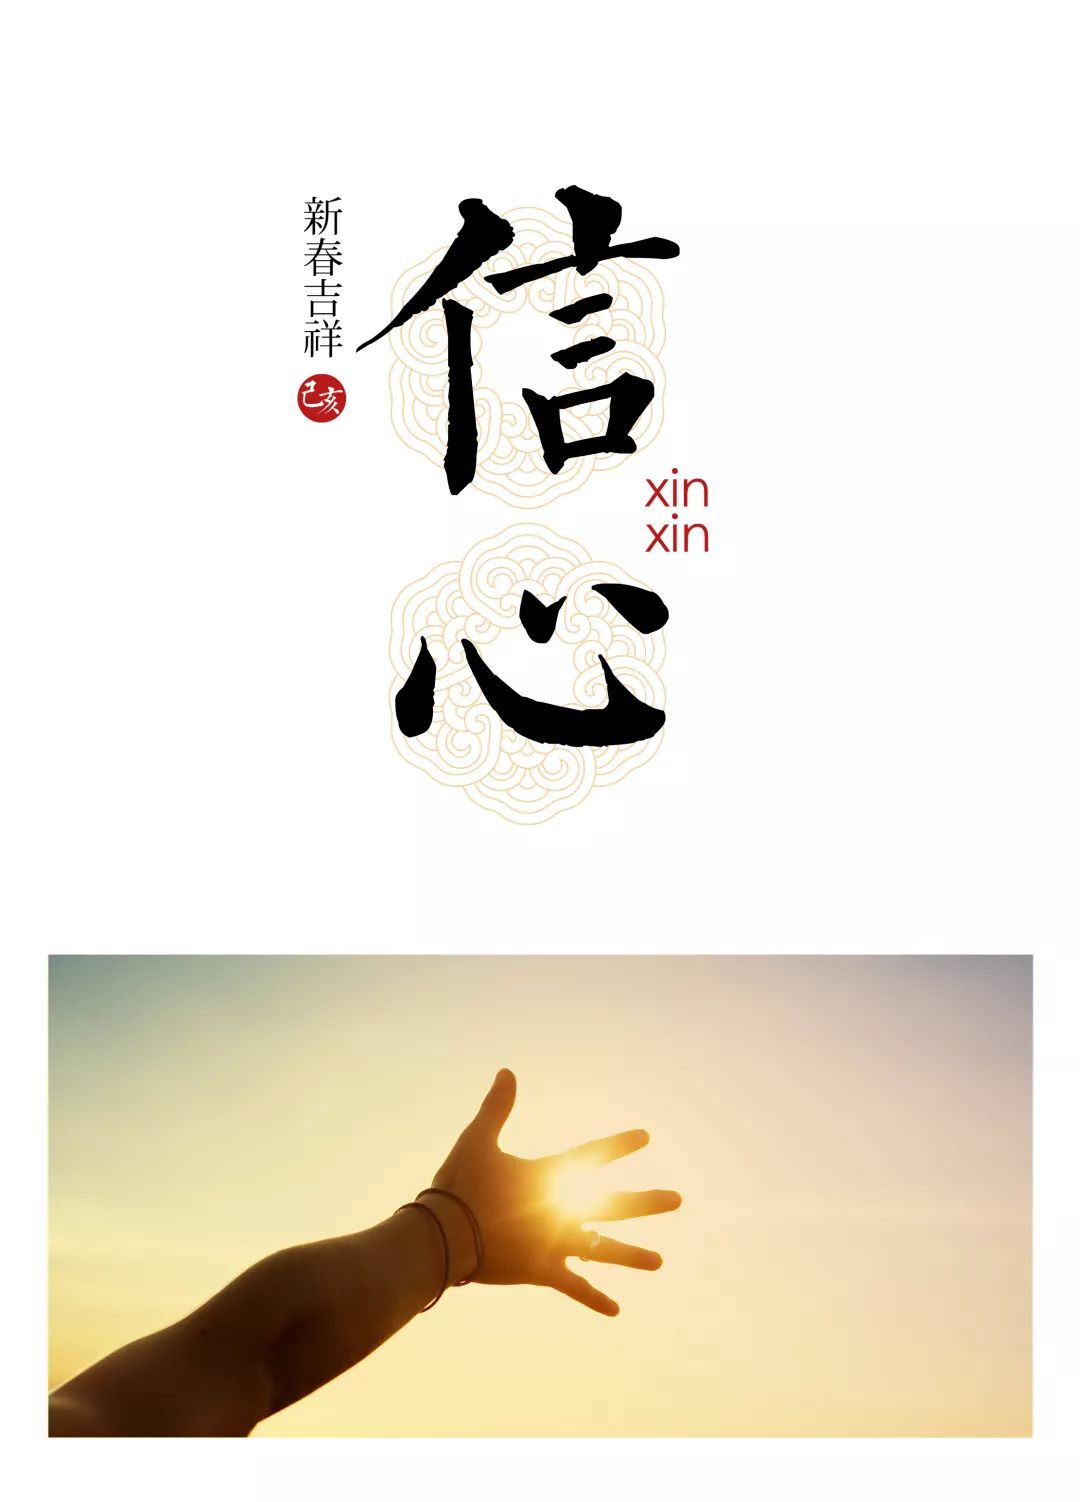 习近平春节团拜会讲话里的四重“心”意|界面新闻 · 中国